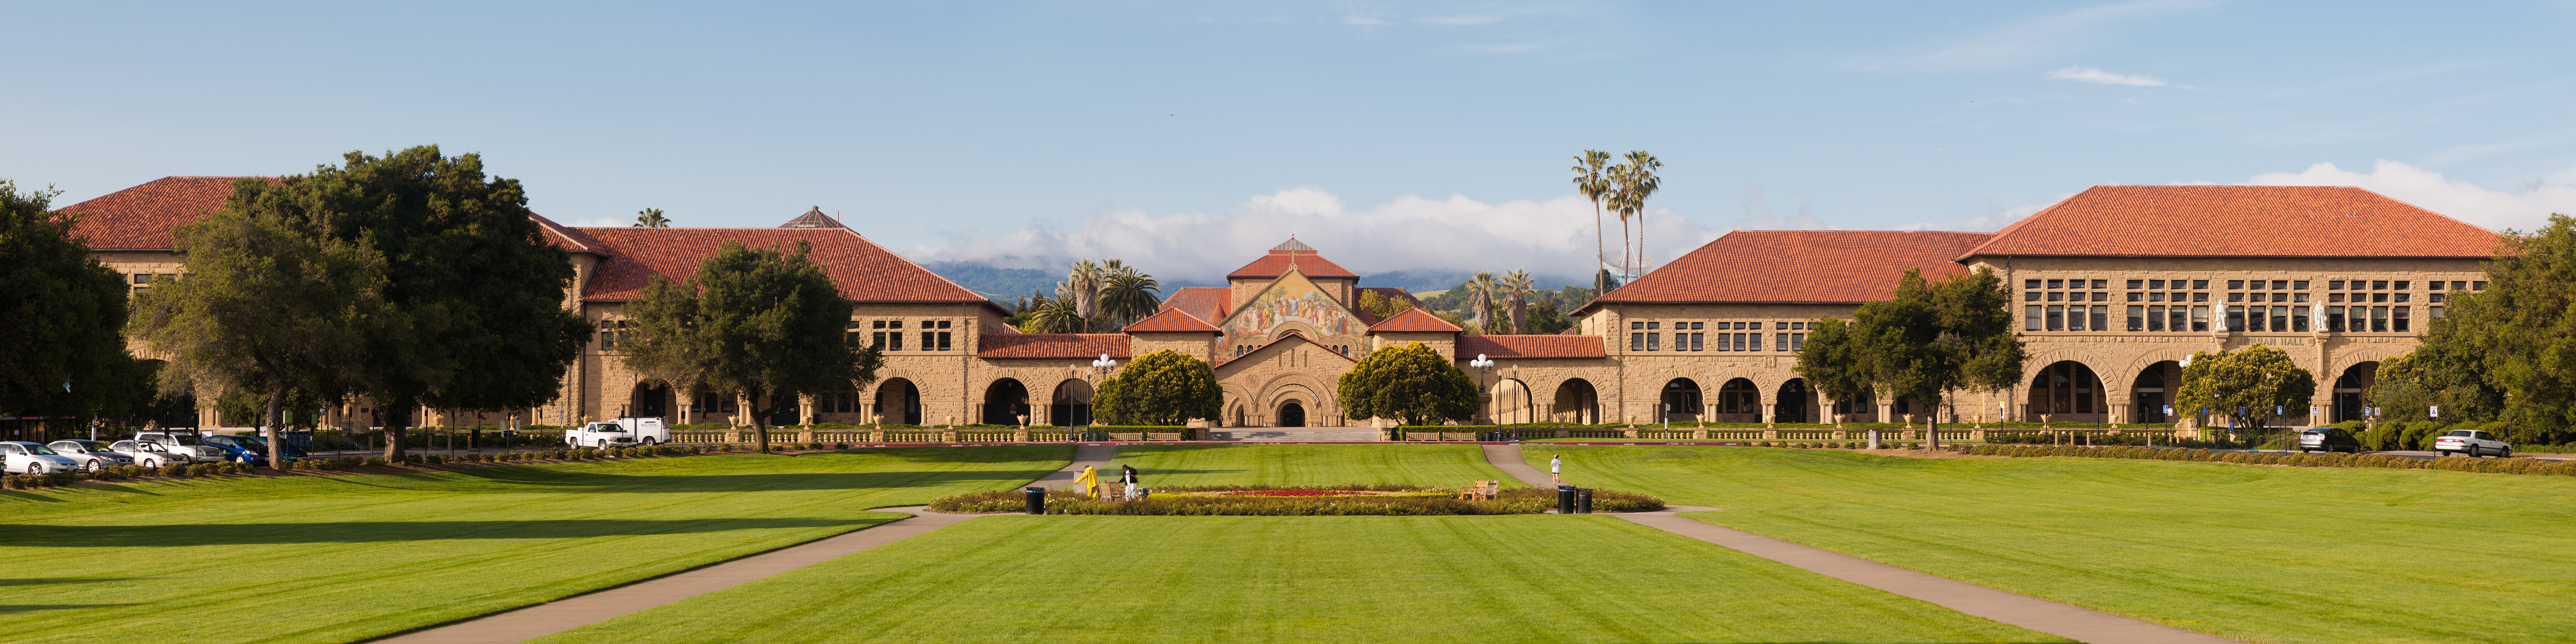 Stanford university photo